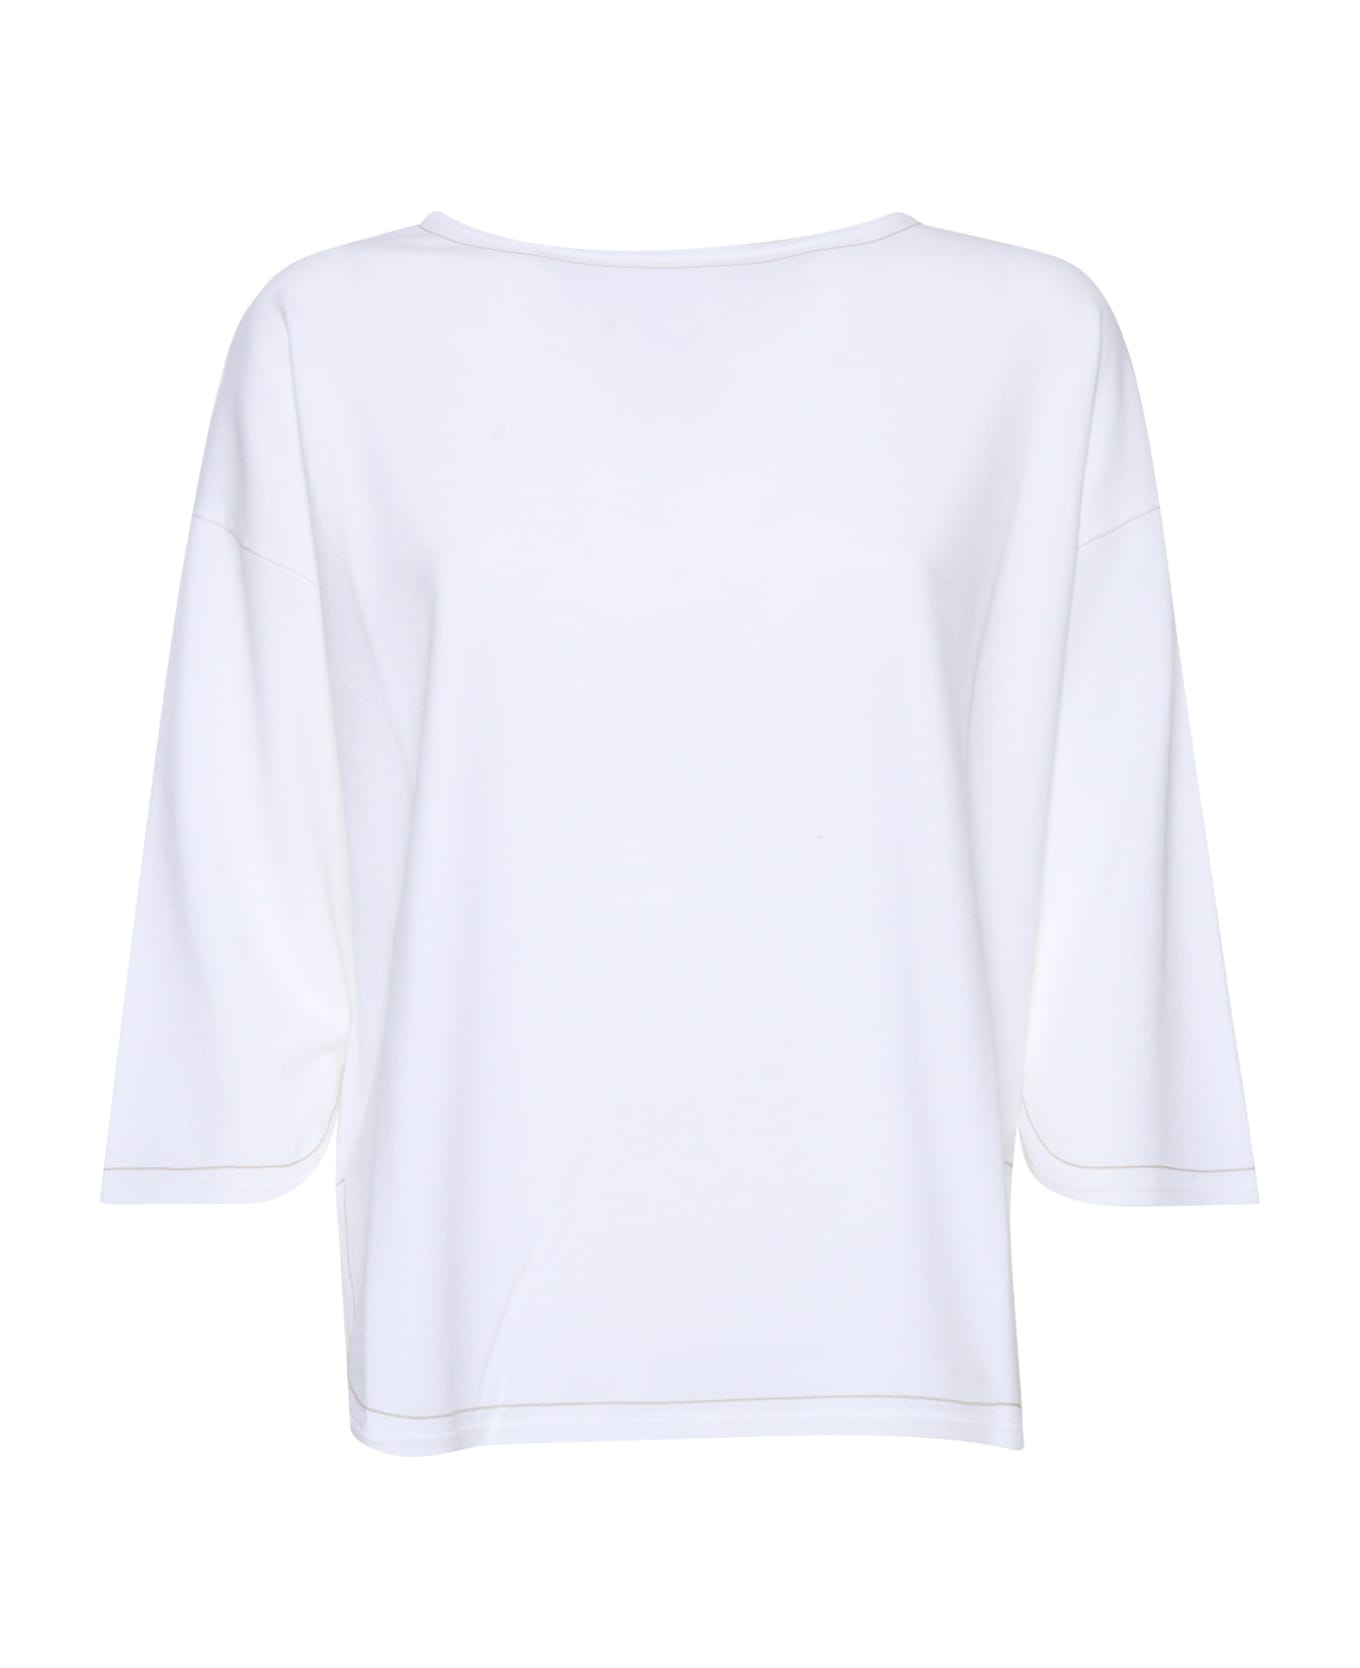 Kangra White Sweater - WHITE ニットウェア